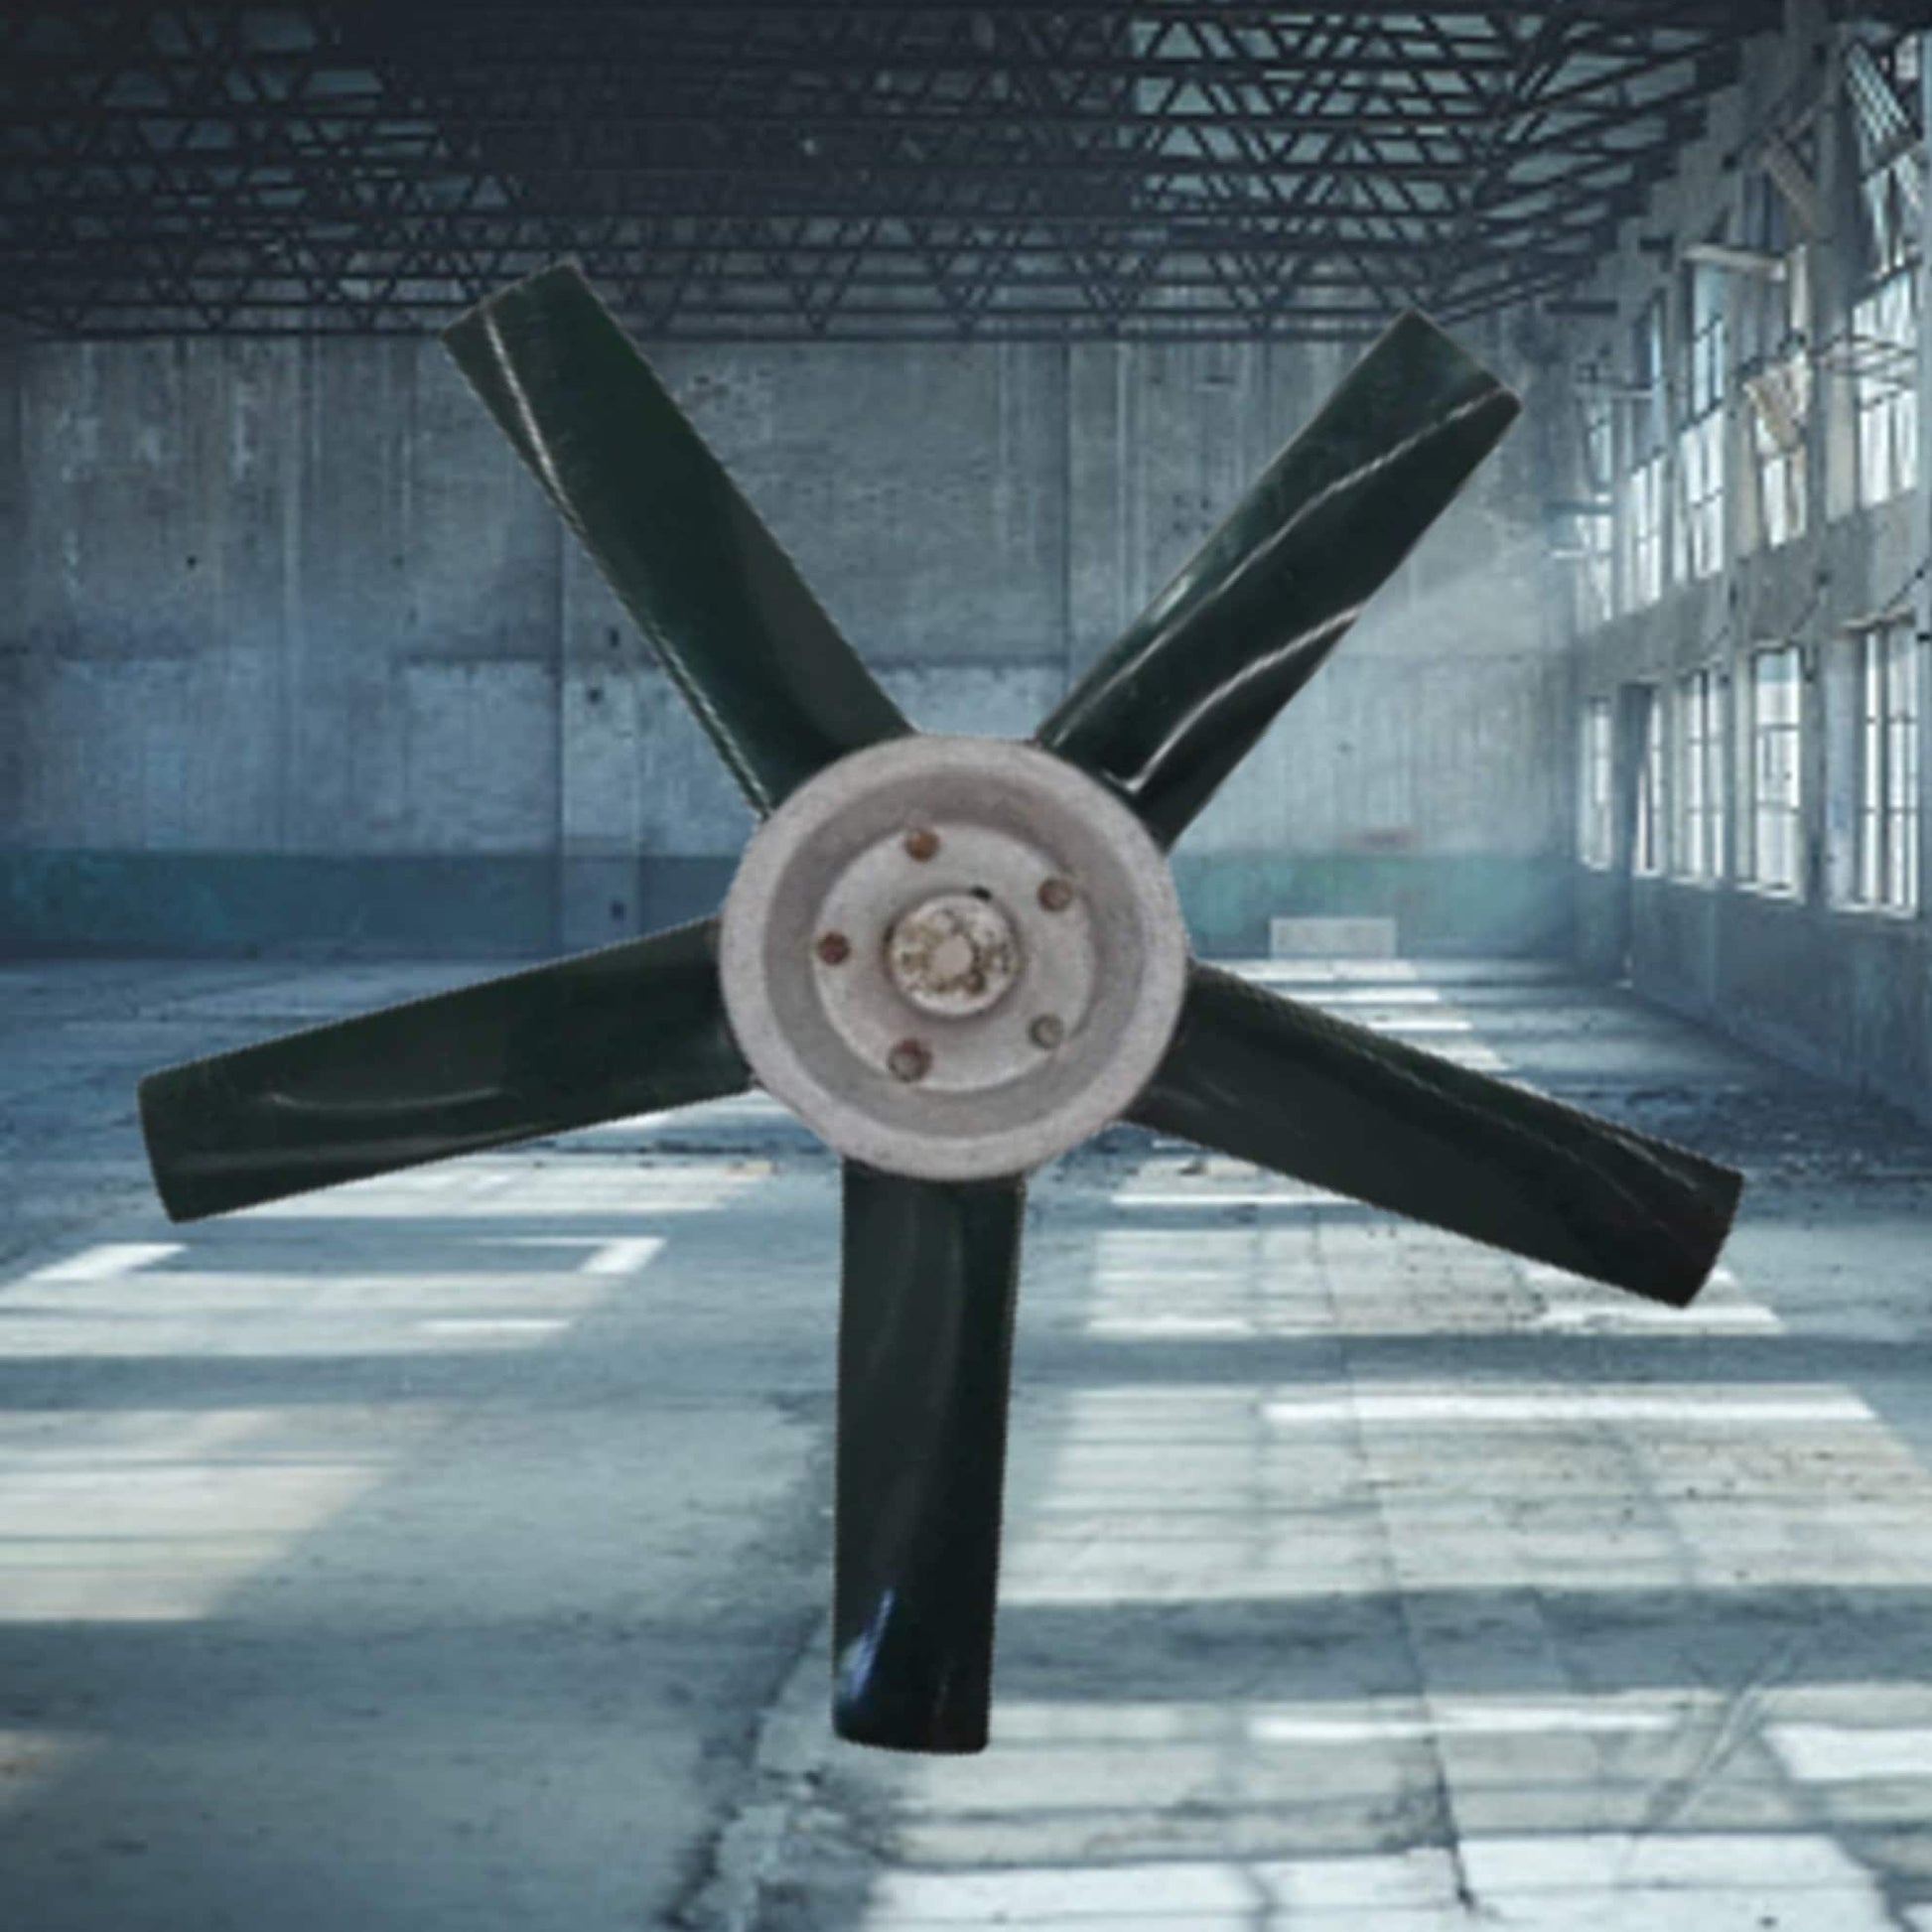 industrial fan wind turbine blade factory decor